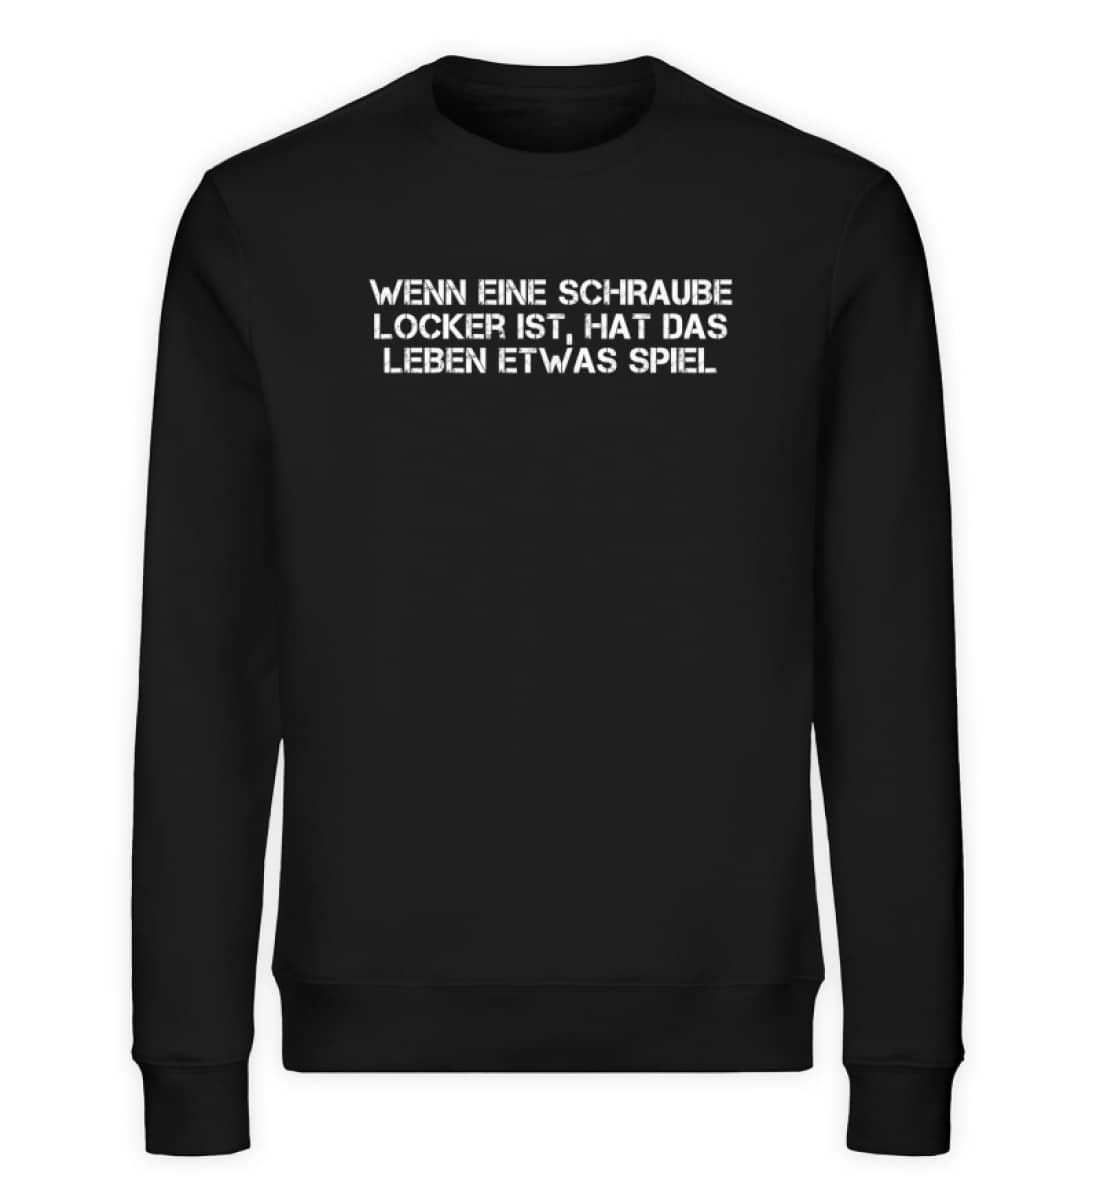 Schraube locker - Unisex Organic Sweatshirt-16